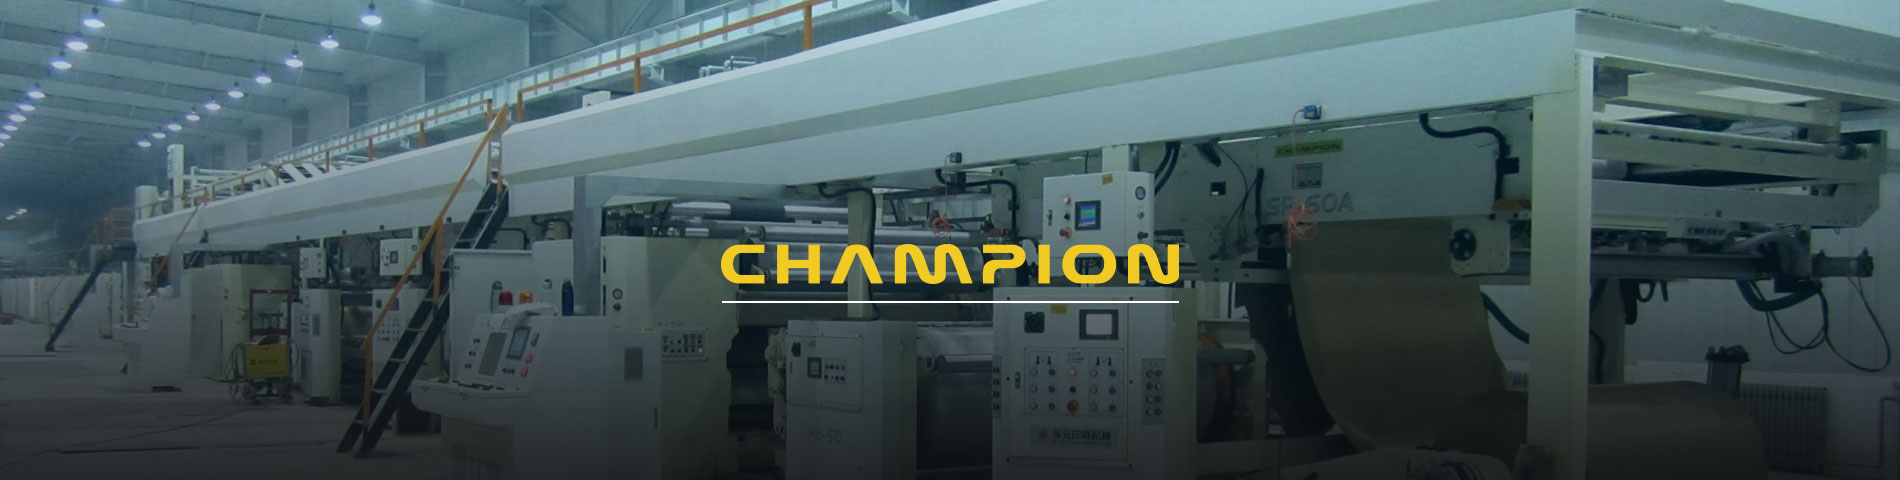 Champion Corrugated เป็นผู้ผลิตเครื่องกลึงกระดาษคอร์รูเกตมืออาชีพ เครื่องกลึงกระดาษคอร์รูเกต